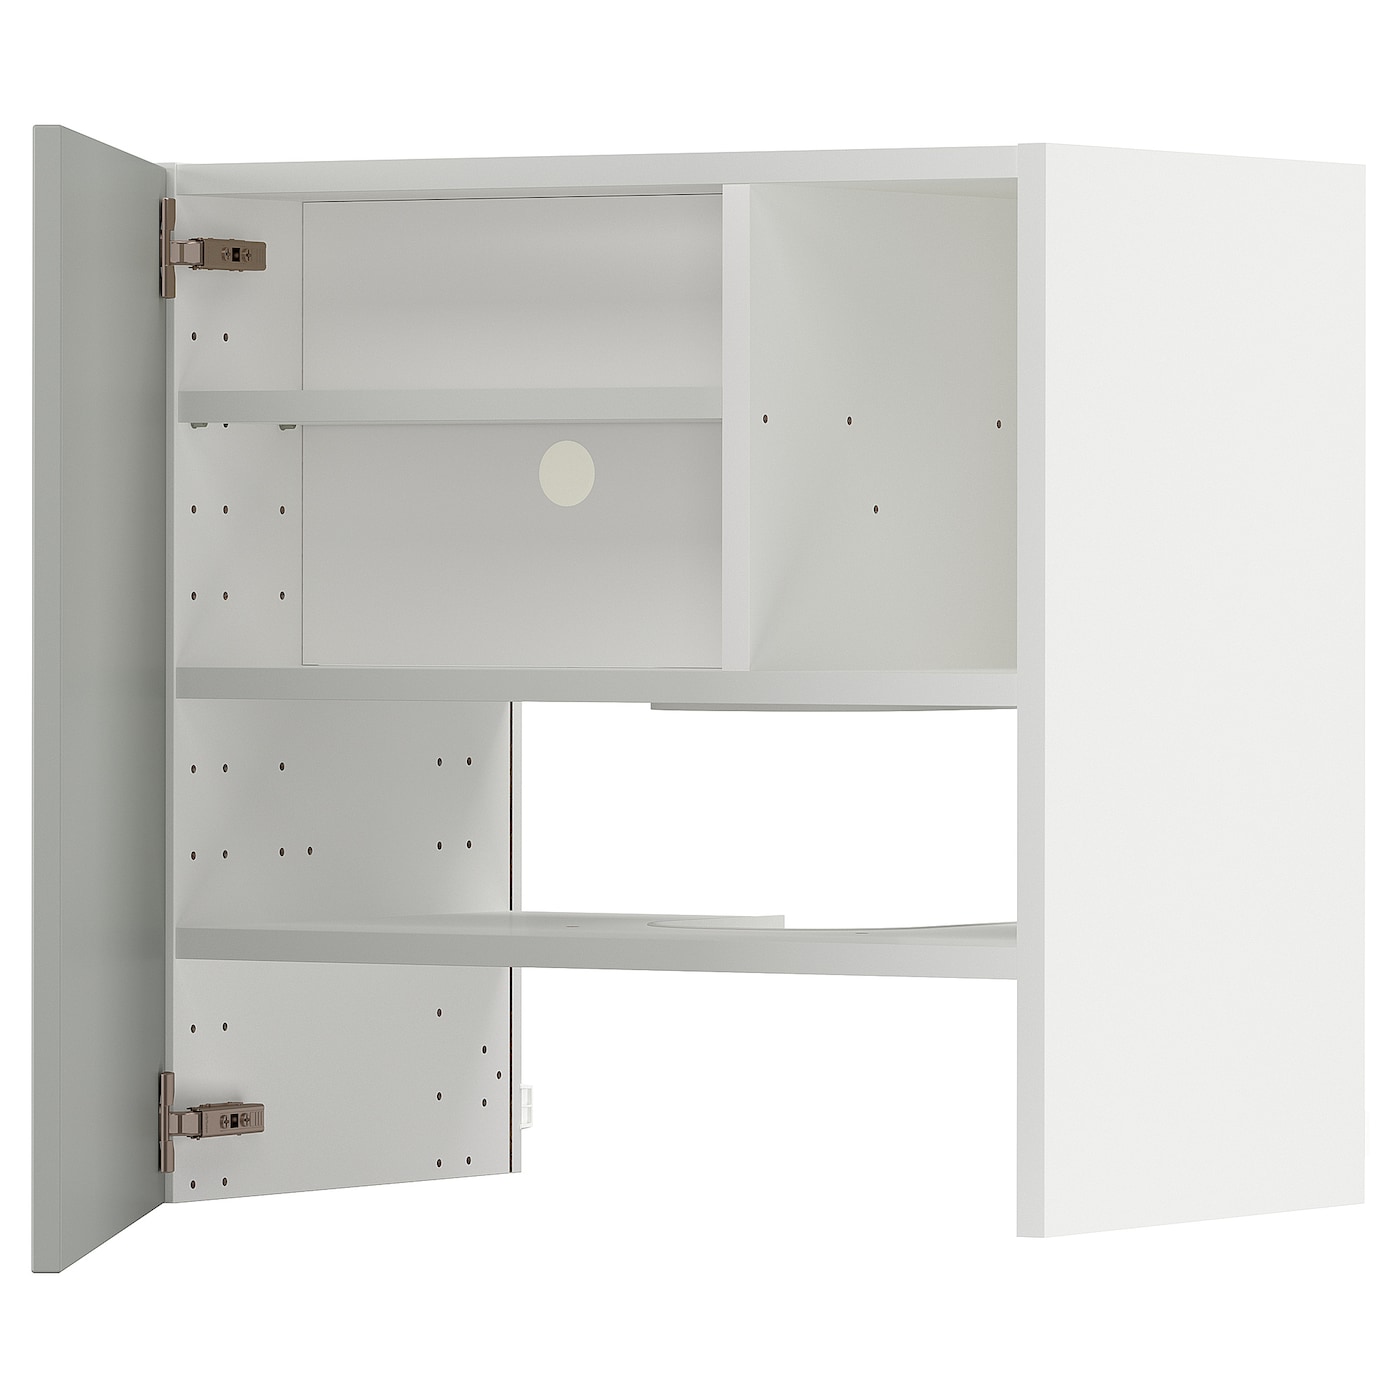 Шкаф - METOD IKEA/ МЕТОД ИКЕА,  60х60 см, белый/серый